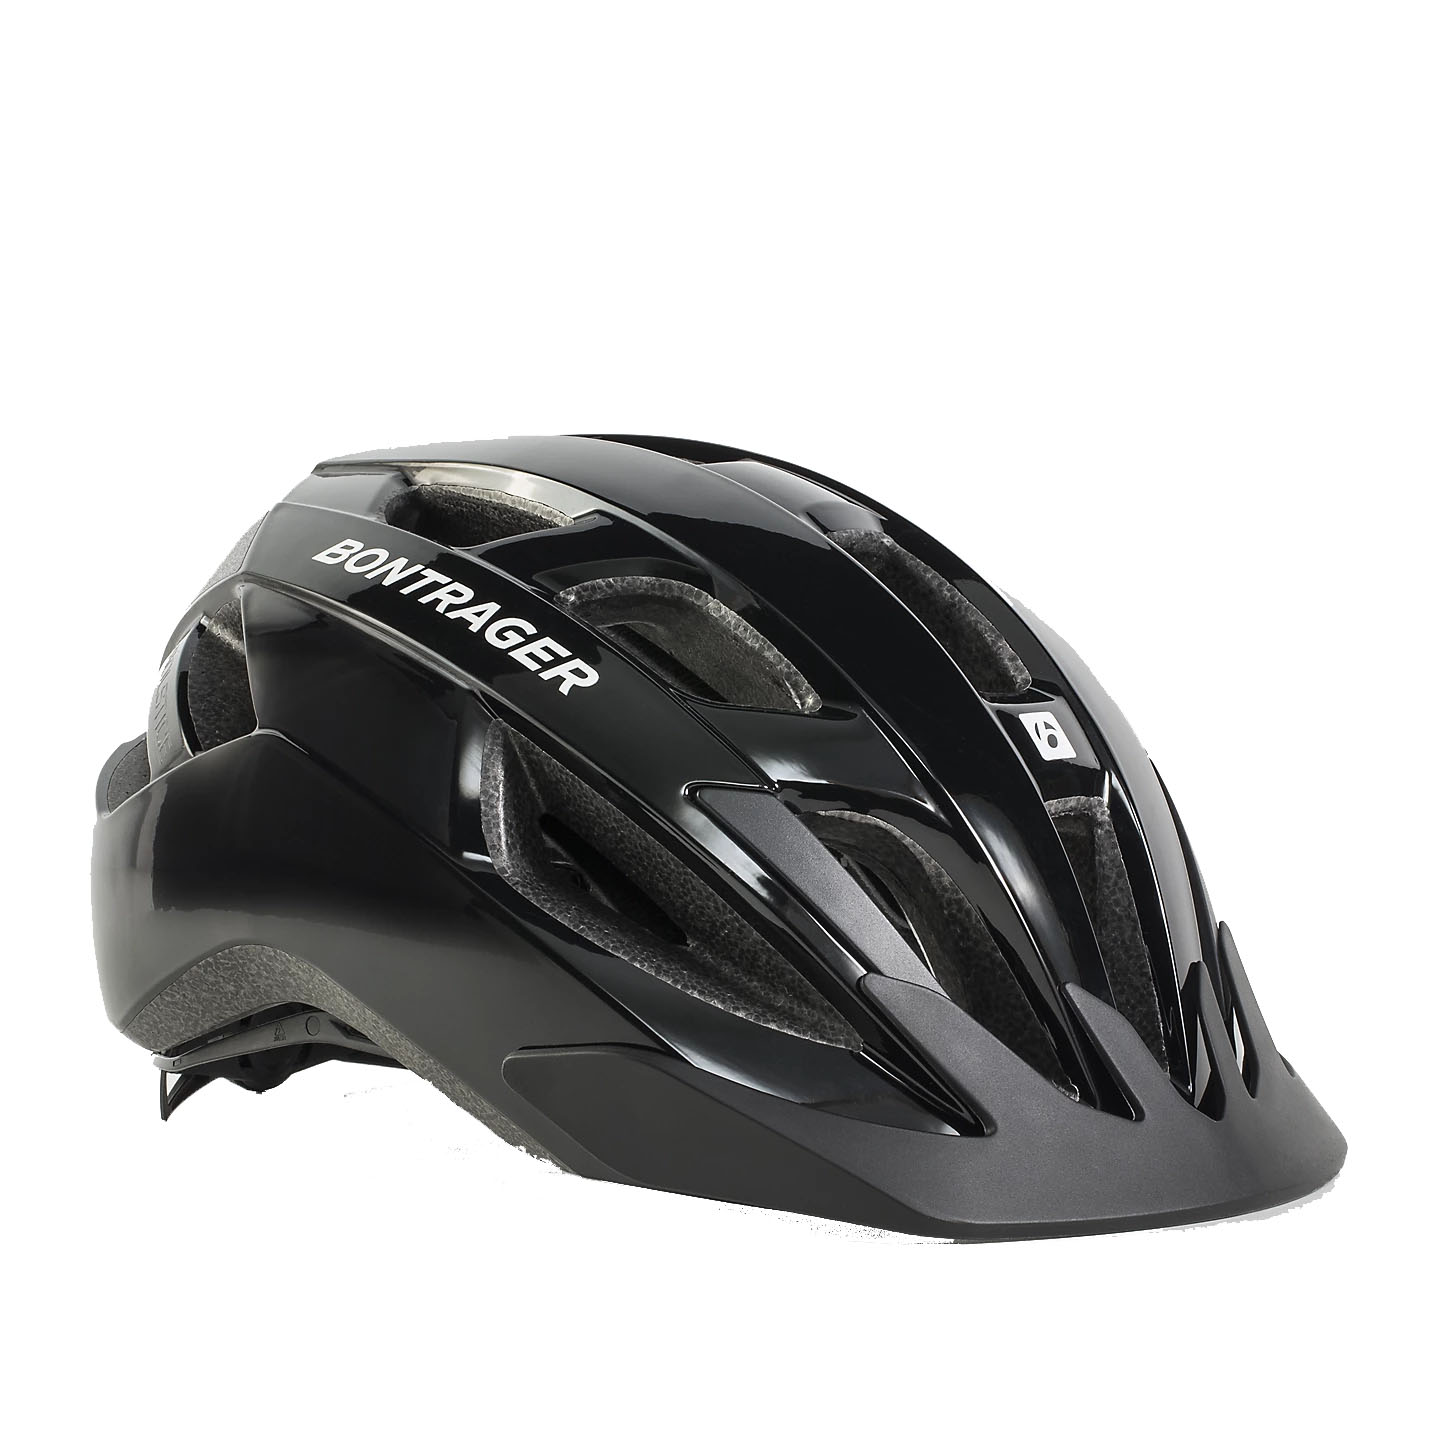 Helmet Bontrager Solstice Black Small-Med 51-58cm